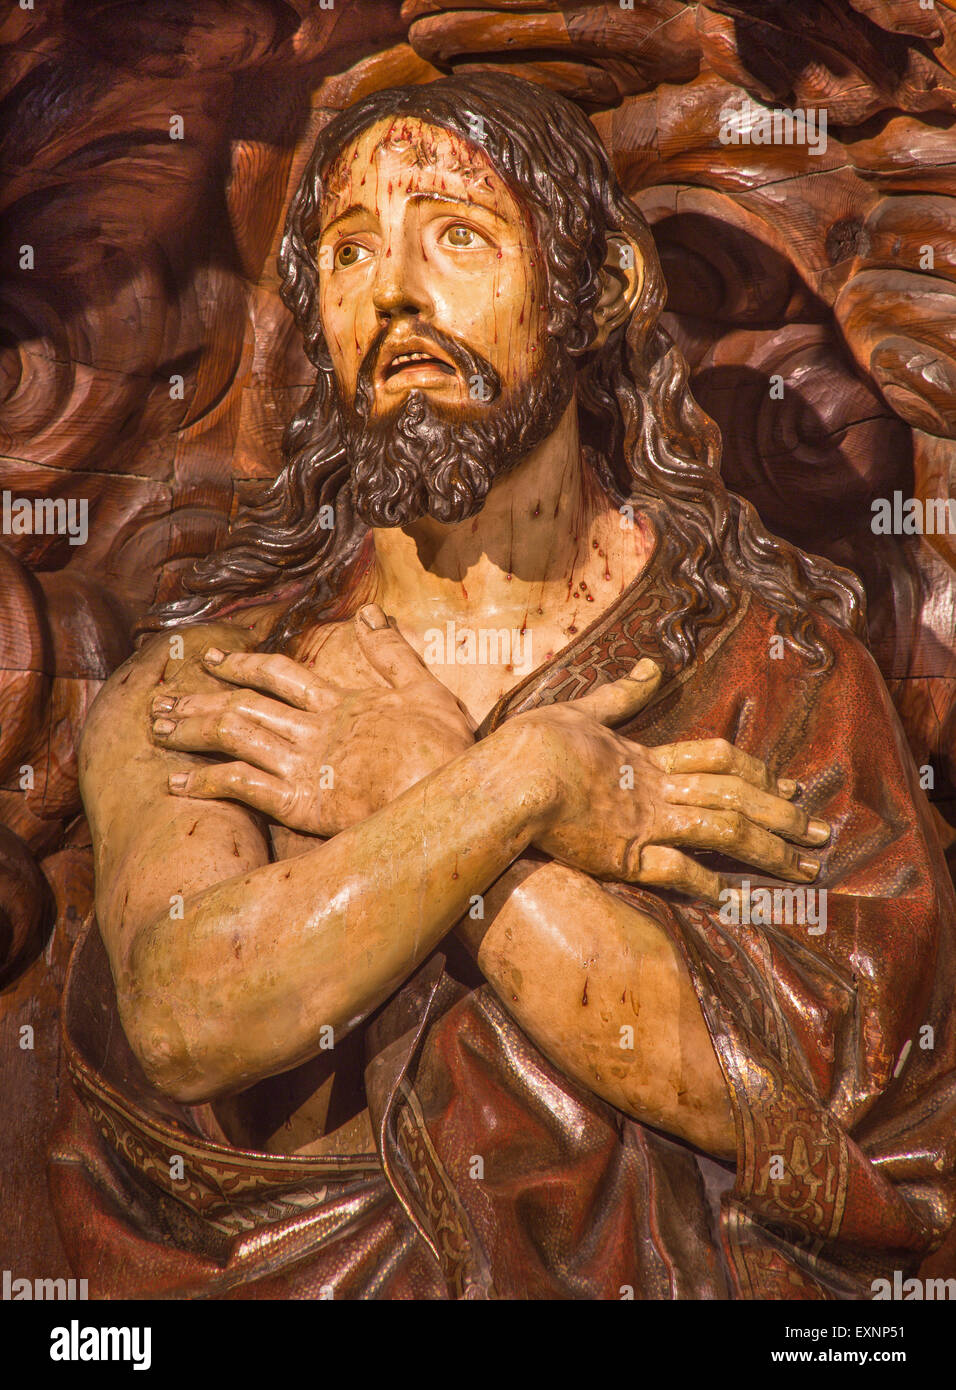 Granada - die geschnitzte Statue des geißelbesetzten Jesu Christi in Scarleat Mantel in Kirche Real Colegiata de San Hipolito Stockfoto